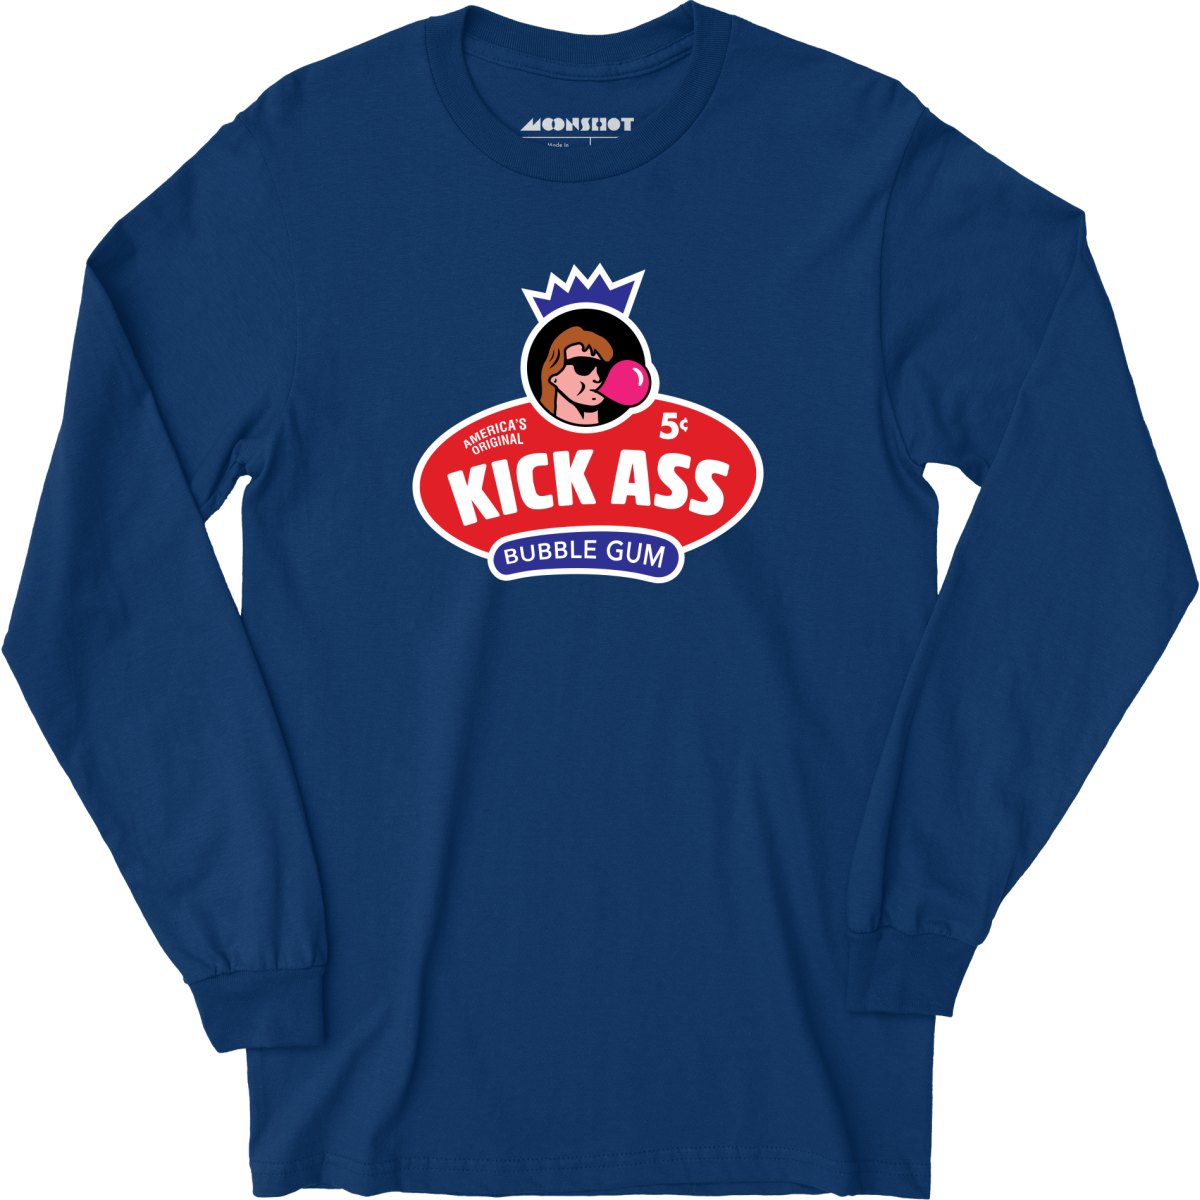 Kick Ass Bubble Gum - Long Sleeve T-Shirt